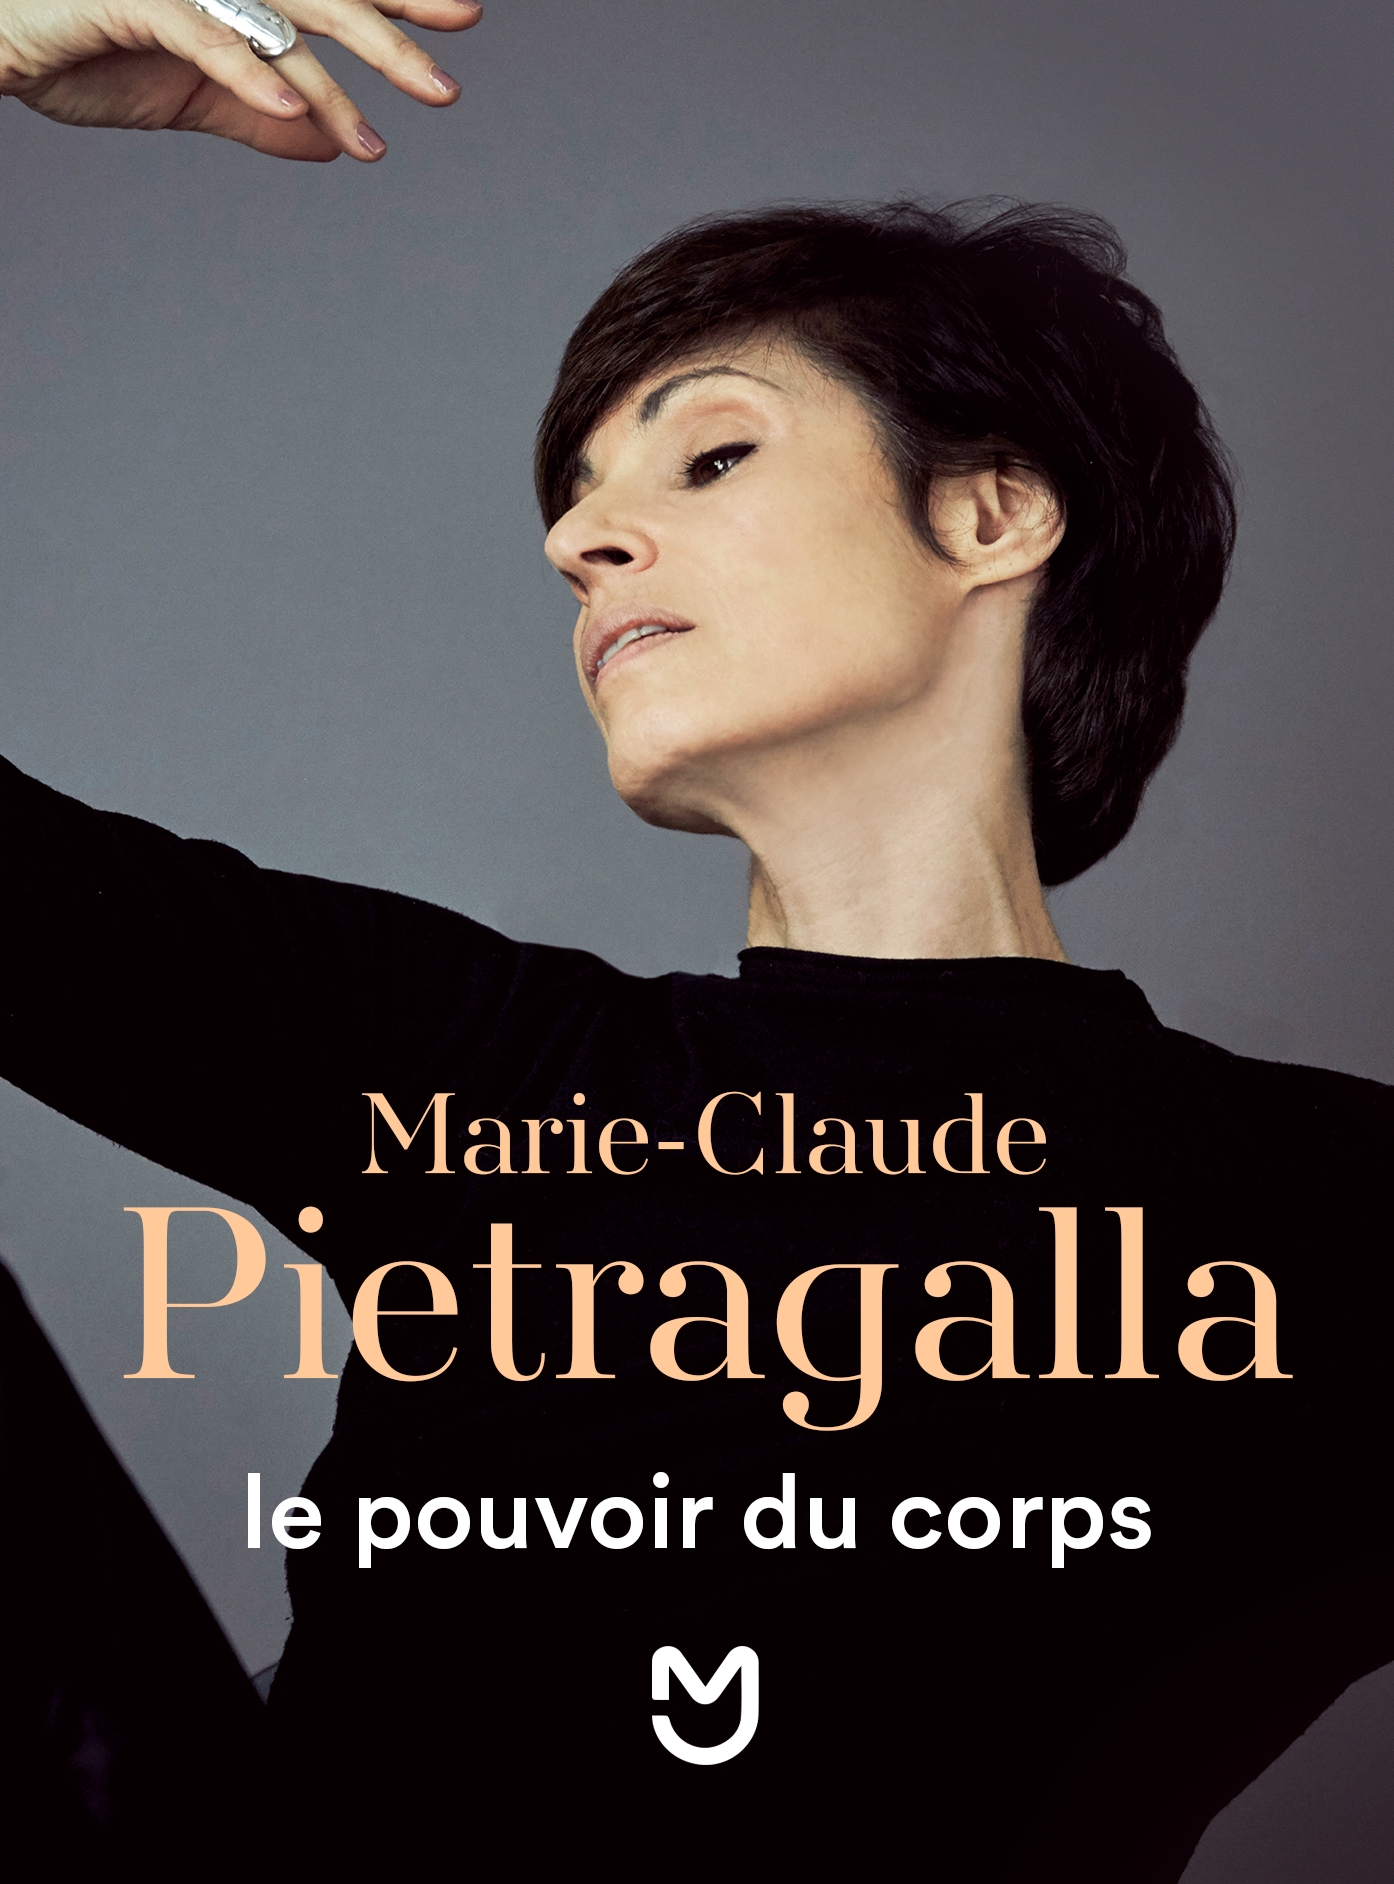 Marie-Claude Pietragalla, le pouvoir du corps